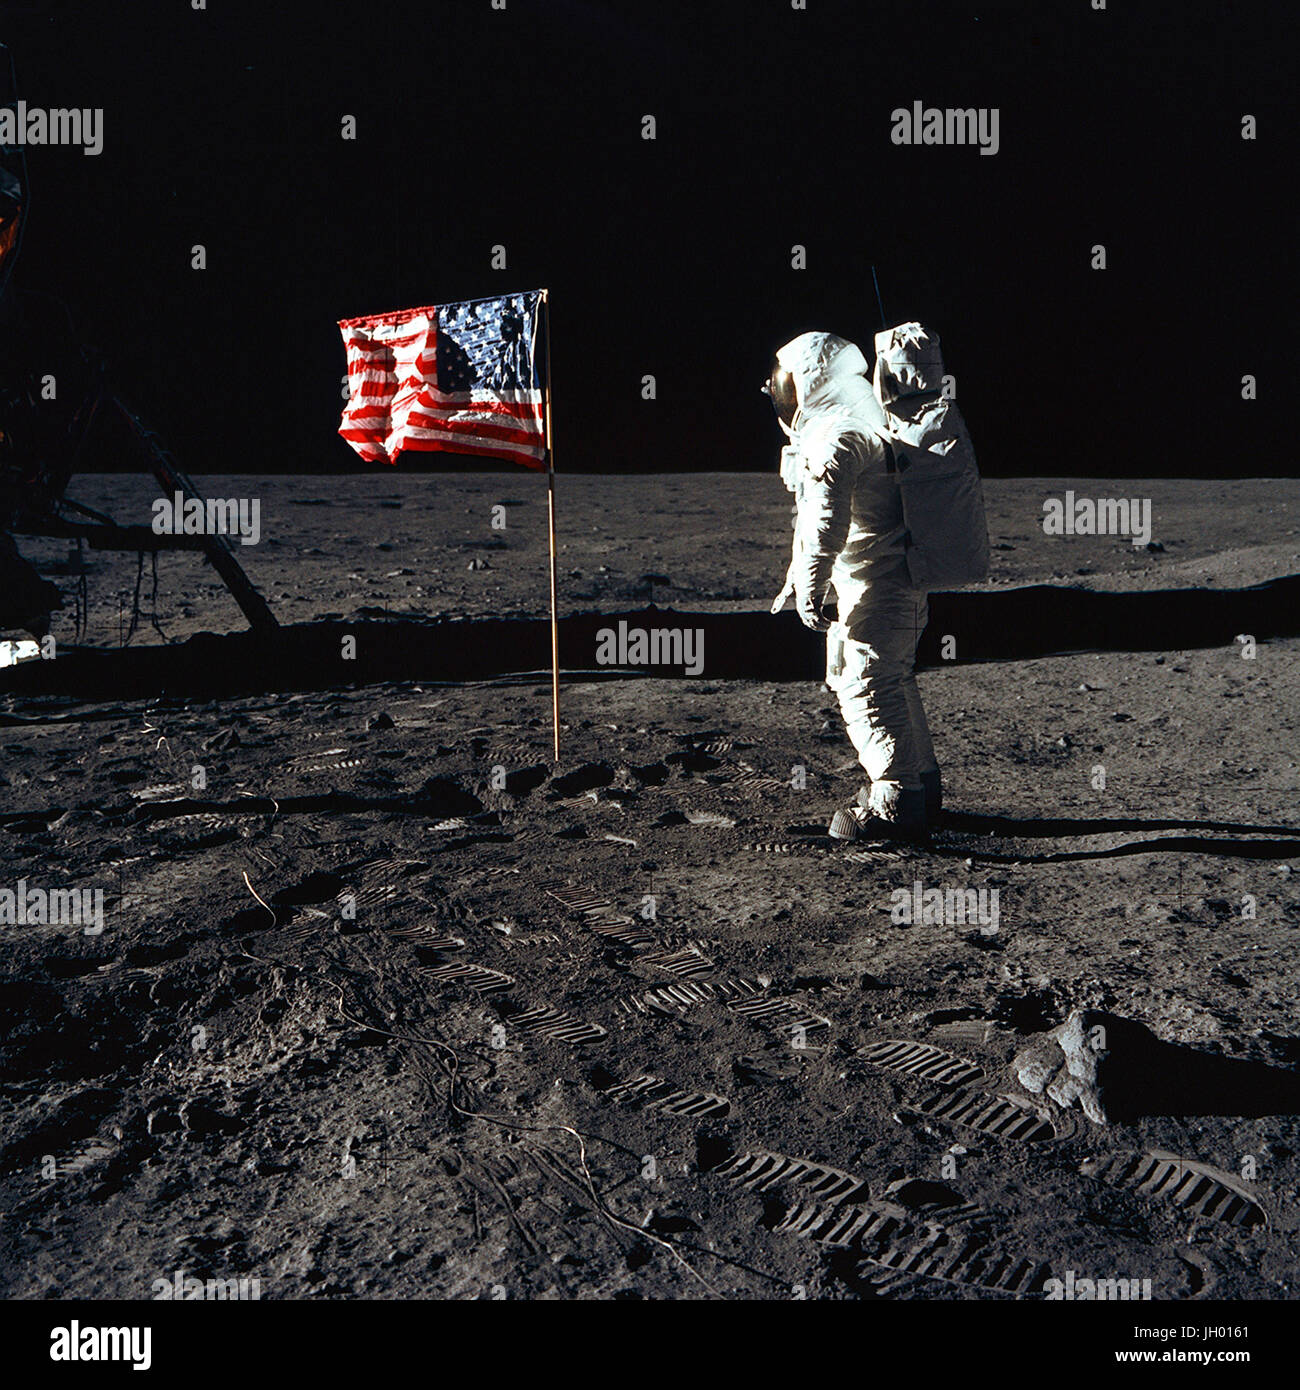 Astronaut Buzz Aldrin, Pilot der Mondlandefähre der ersten Mondlandung Mission, posiert für ein Foto neben der bereitgestellten USA Flagge während der Apollo 11 Extravehicular Activity (EVA) auf der Mondoberfläche. Die Mondlandefähre (LM) ist auf der linken Seite, und die Fußspuren der Astronauten sind deutlich sichtbar im Boden des Mondes. Astronaut Neil A. Armstrong, Kommandant, nahm dieses Bild mit einem 70 mm Hasselblad lunar Surface-Kamera. Während Astronauten Armstrong und Aldrin in der LM abstammen, Befehl "Adler", zur Erkundung der Region Meer der Ruhe, des Mondes, Astronaut Michael Collins, modu Stockfoto